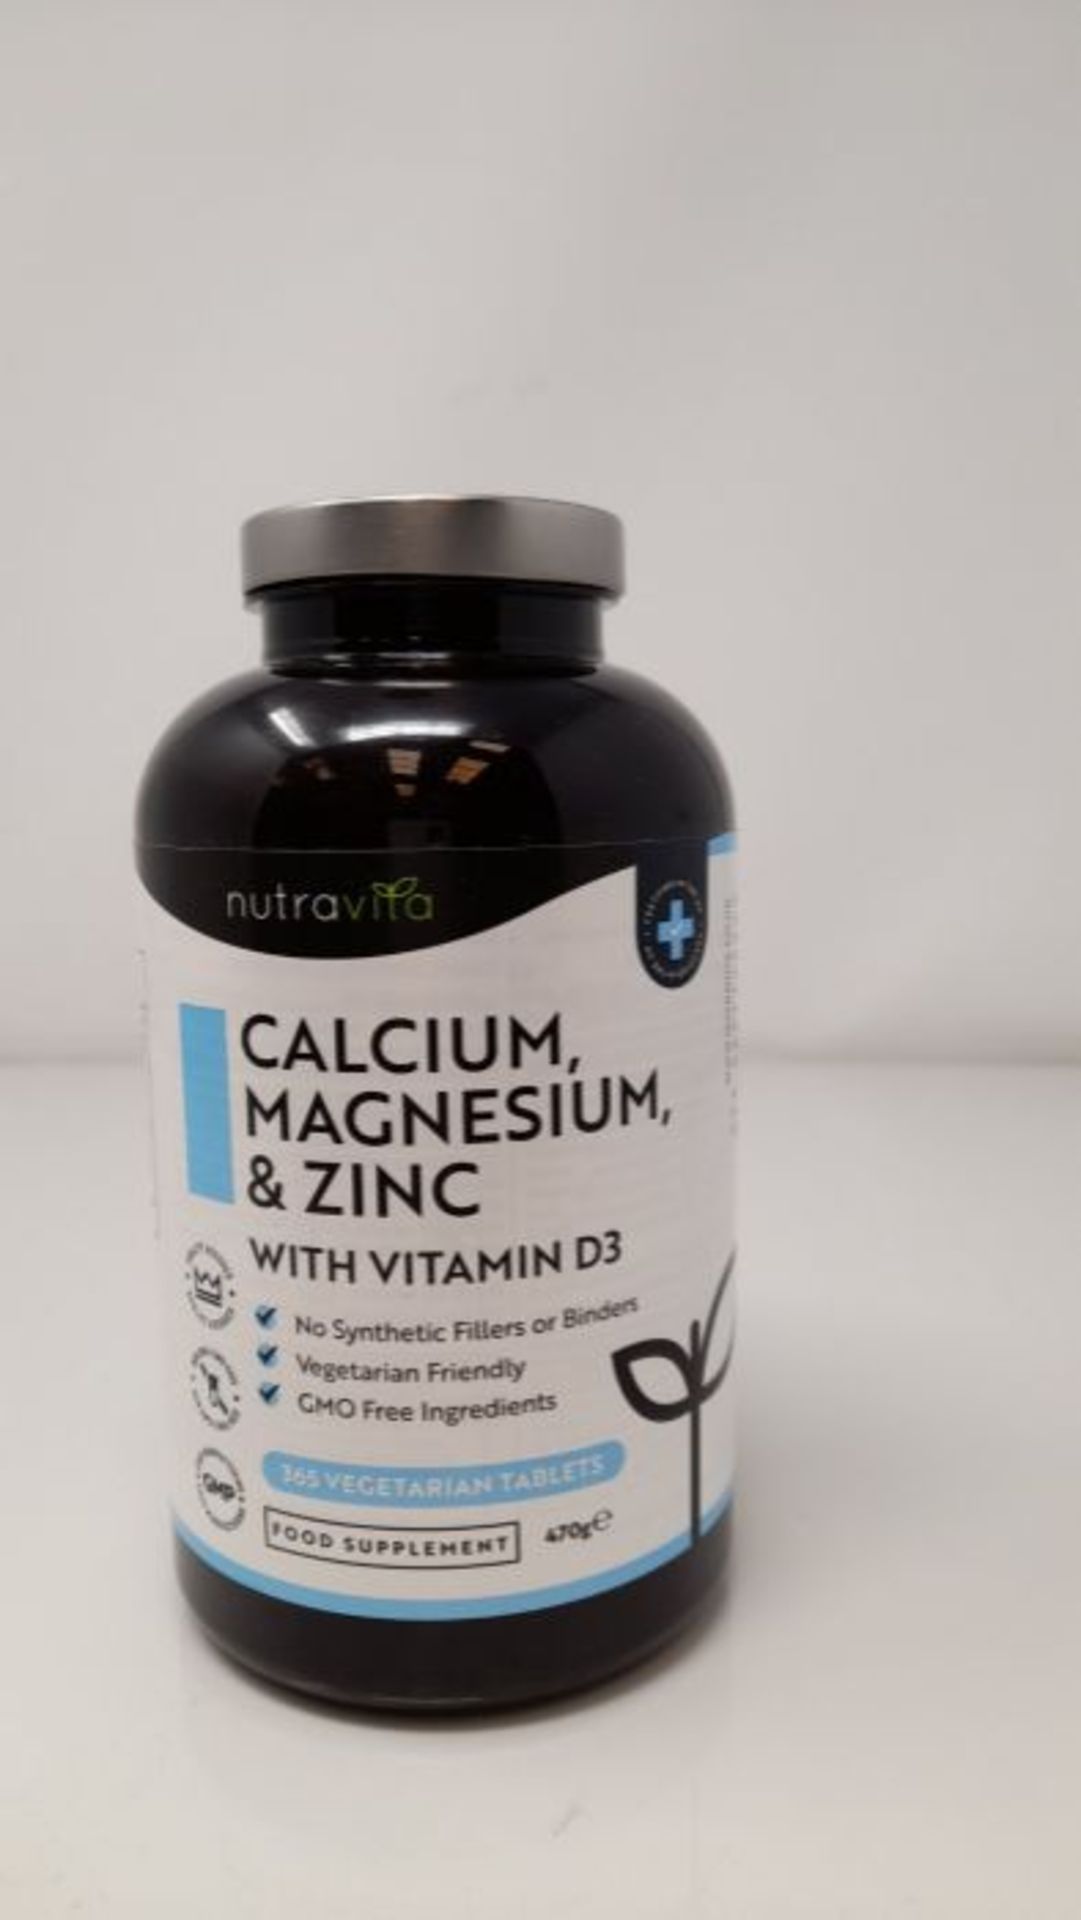 Calcium Magnesium Zinc & Vitamin D3-365 Vegetarian Tablets - High Strength Calcium Sup - Image 2 of 3